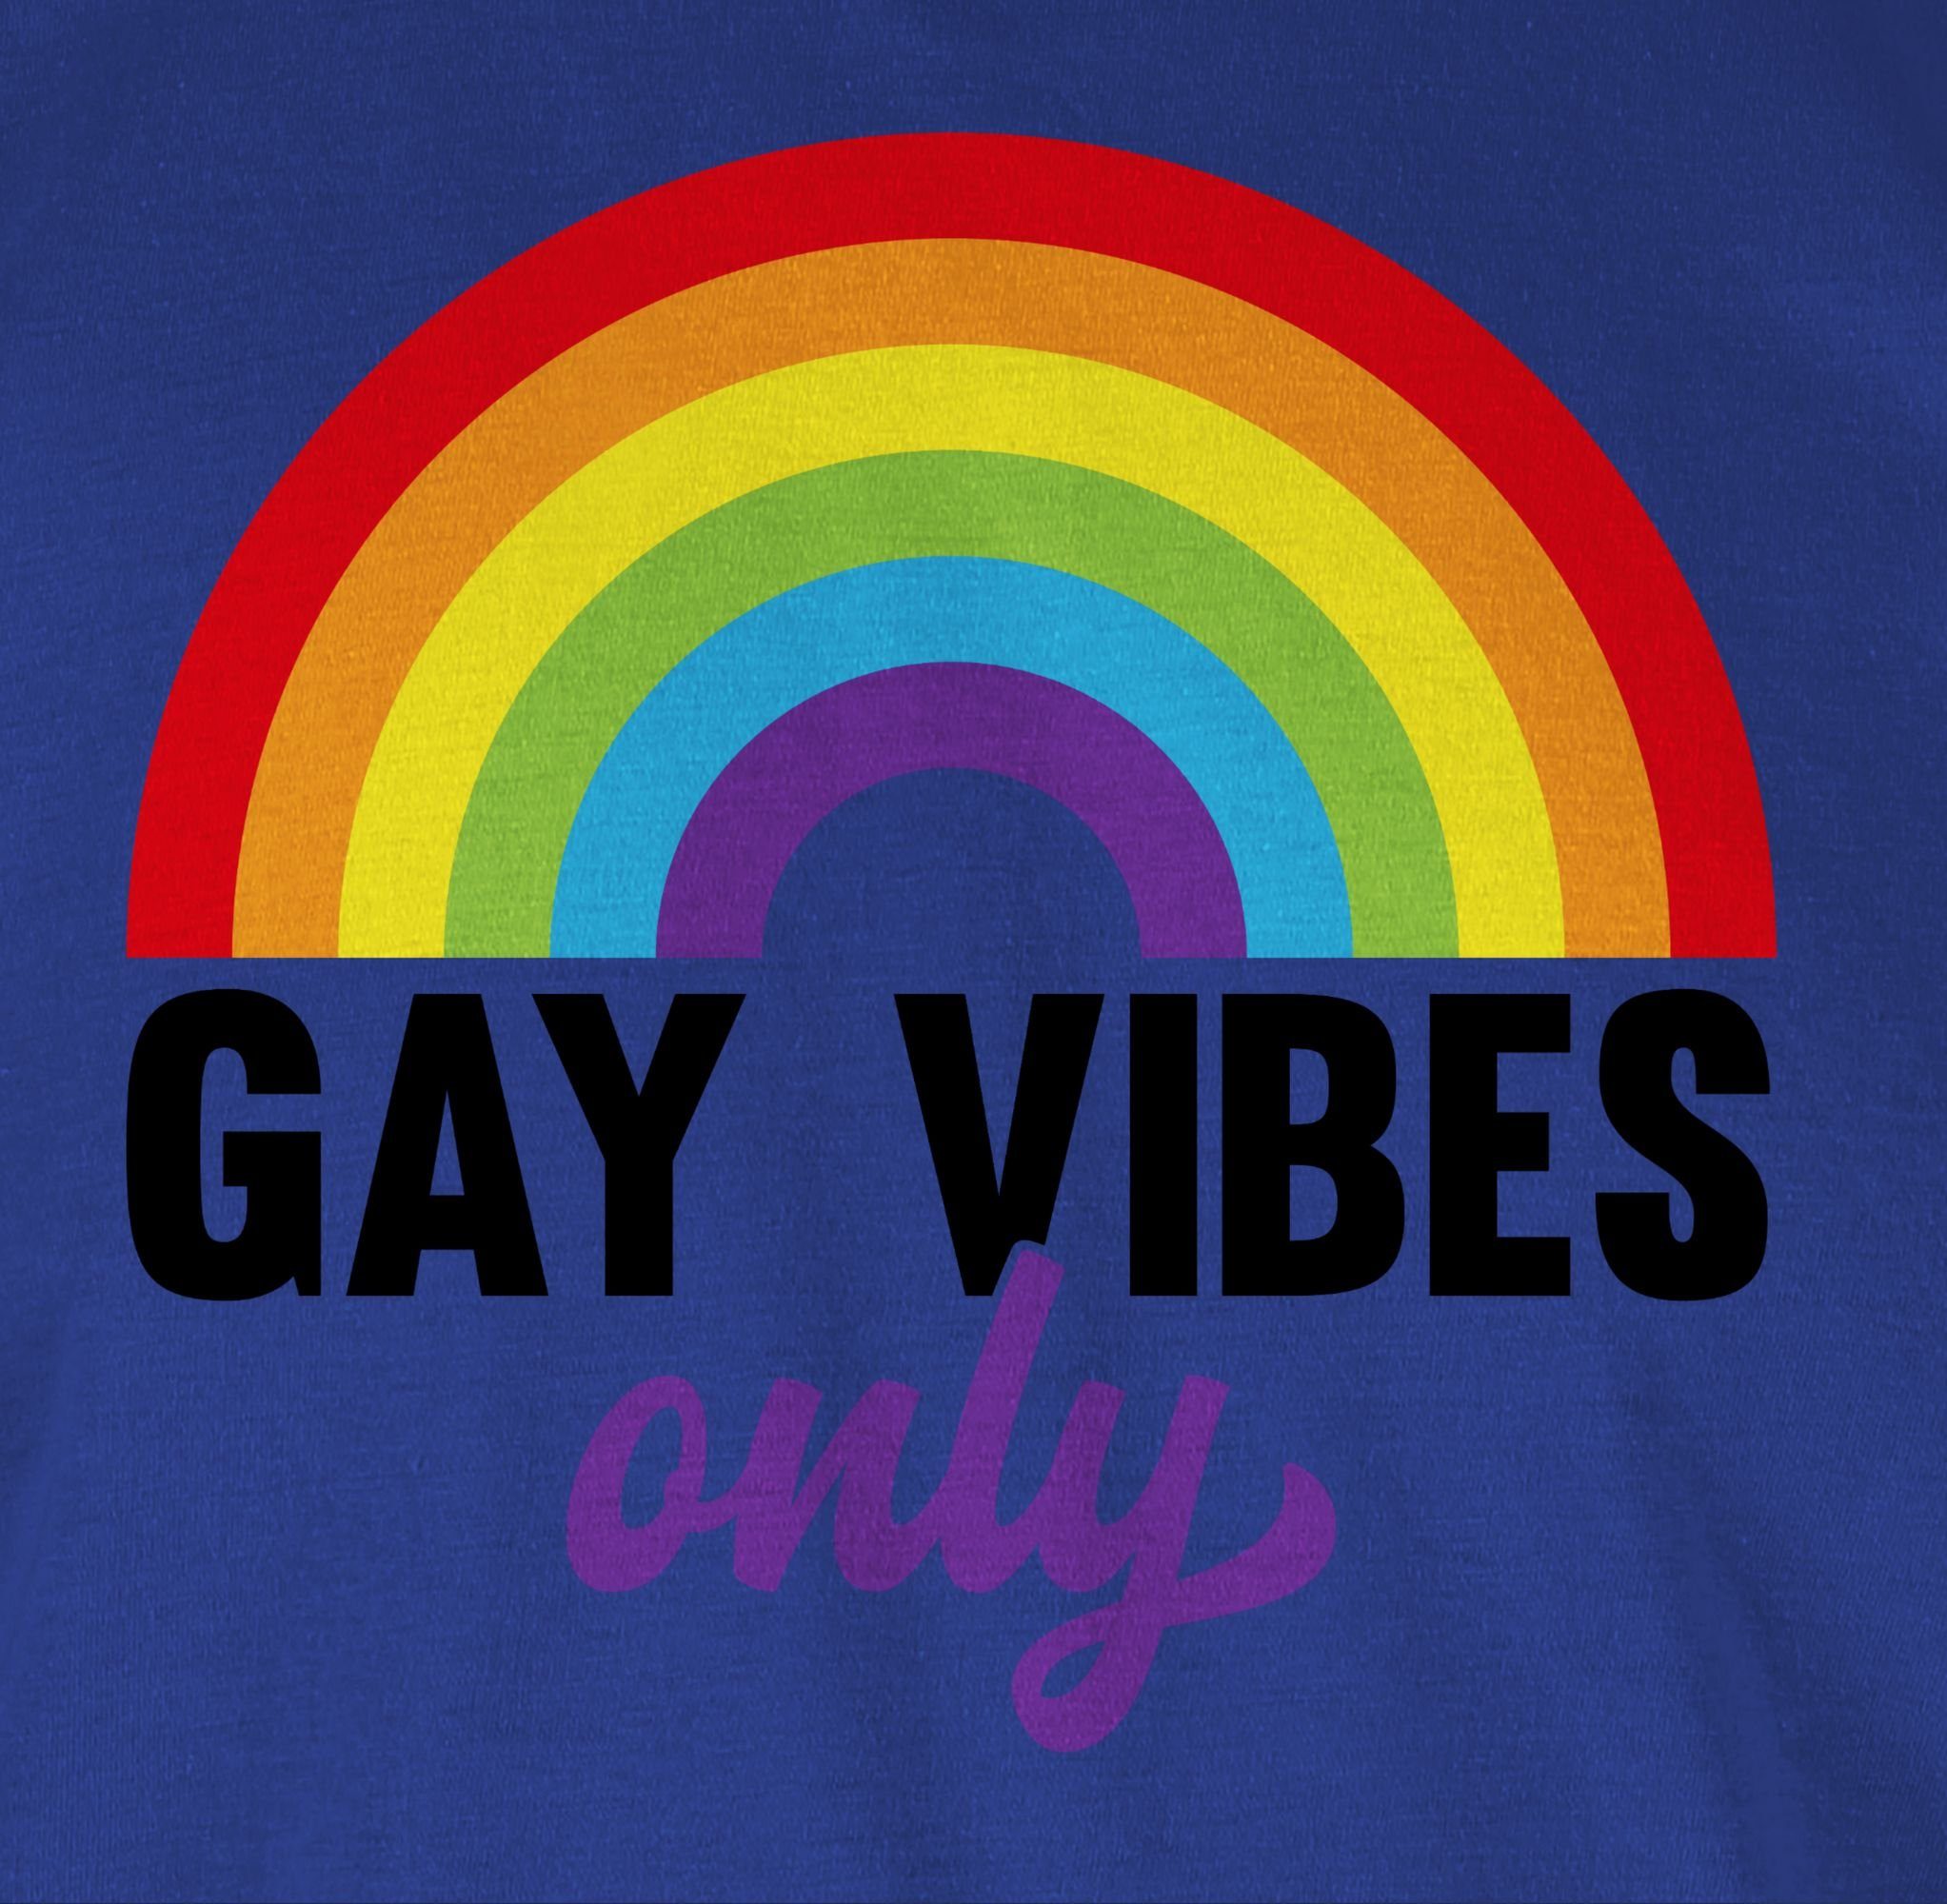 03 T-Shirt - Regenbogen Vibes Kleidung Shirtracer Only Royalblau Gay LGBT